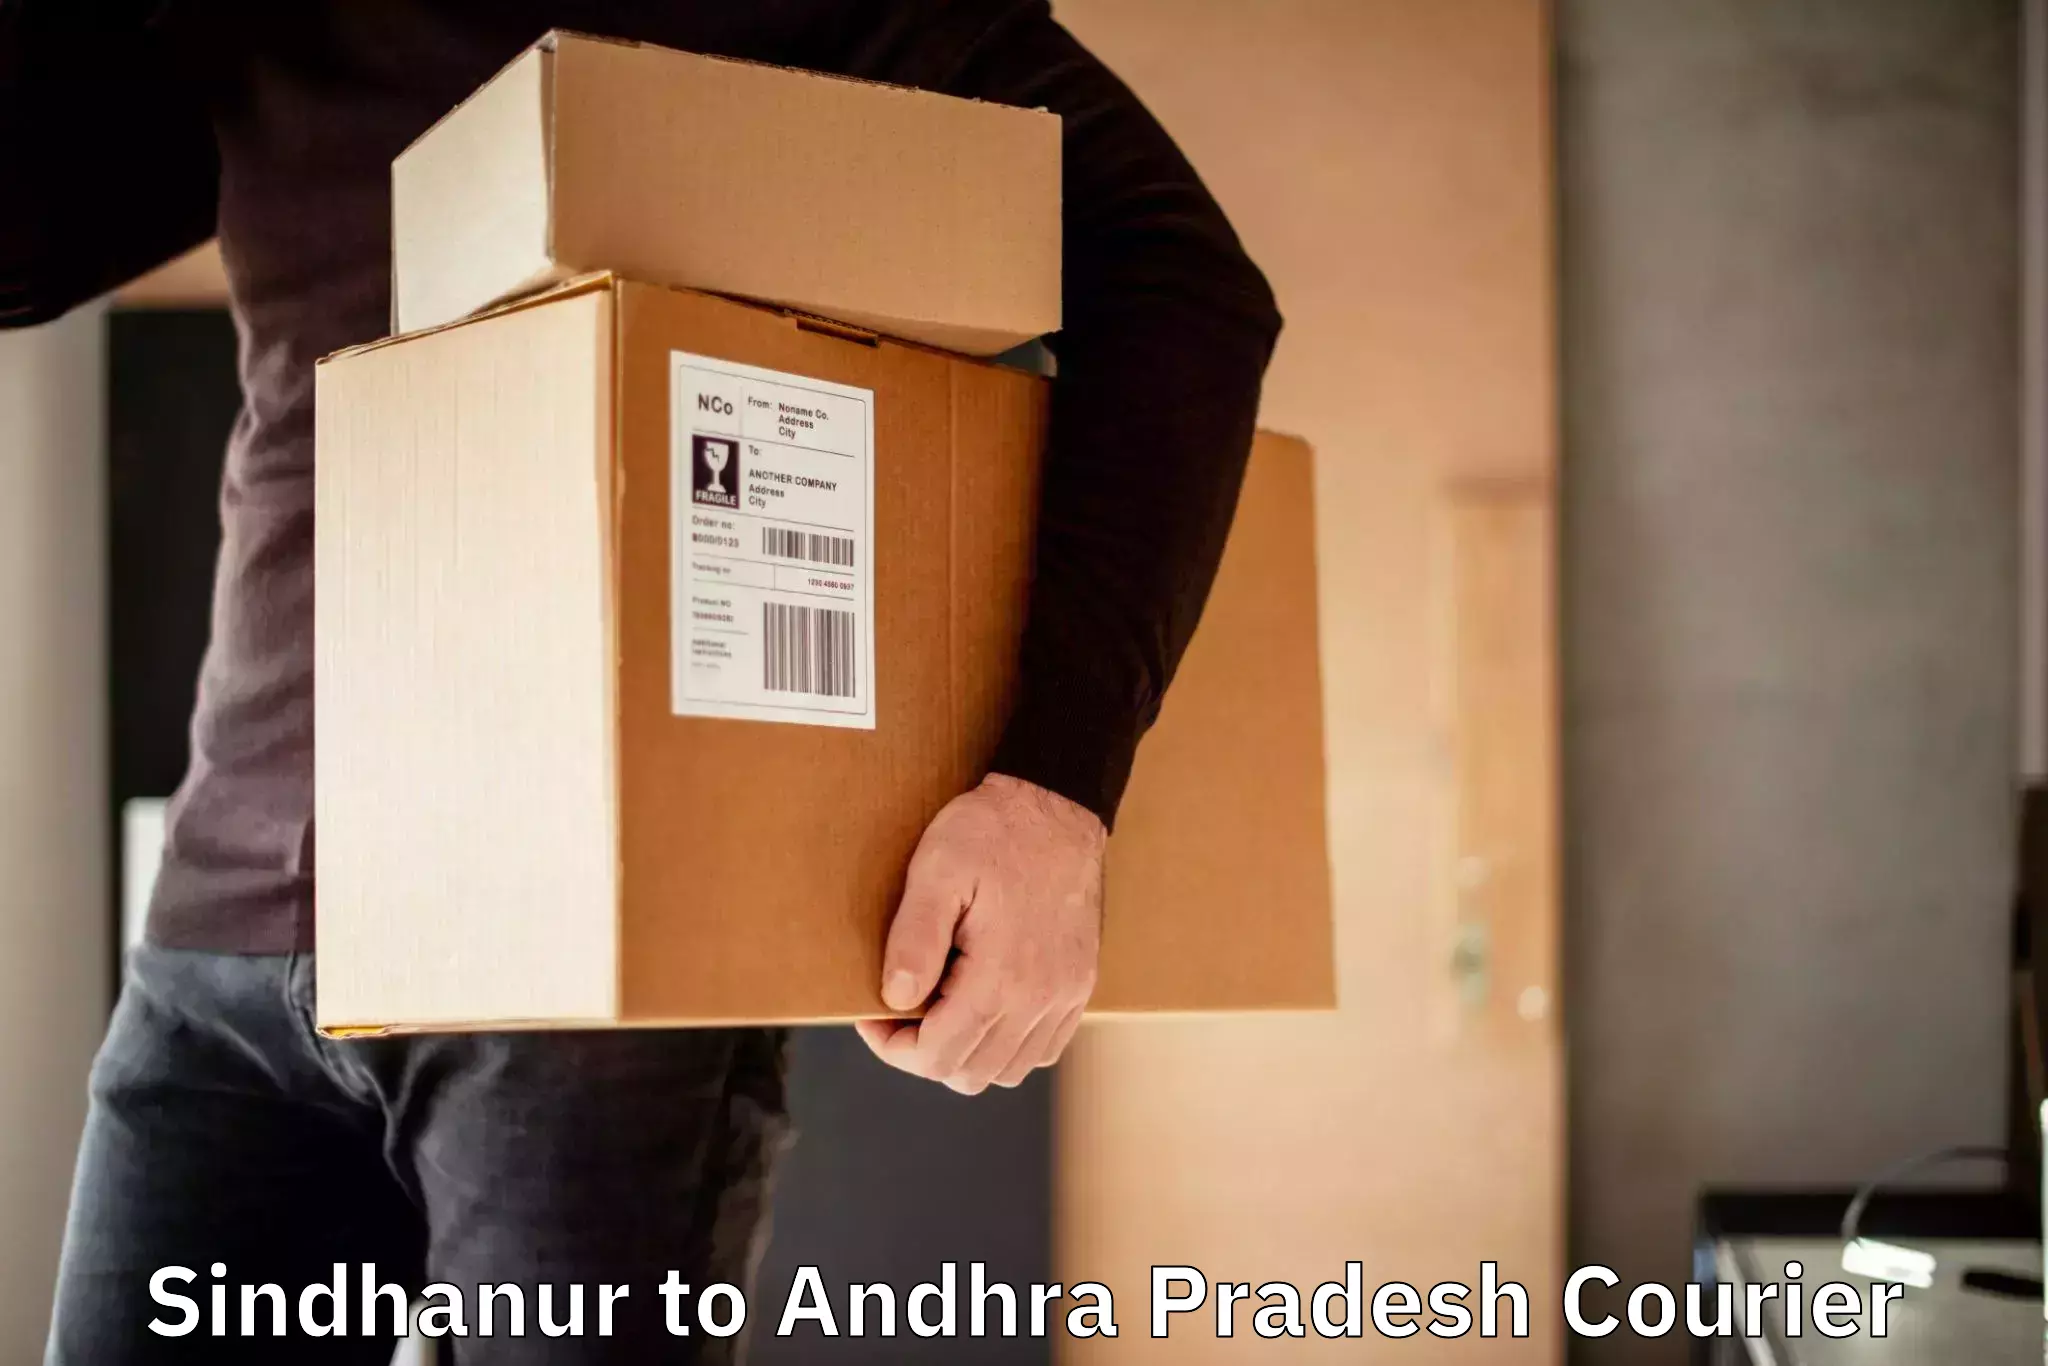 High-speed parcel service Sindhanur to Lingapalem